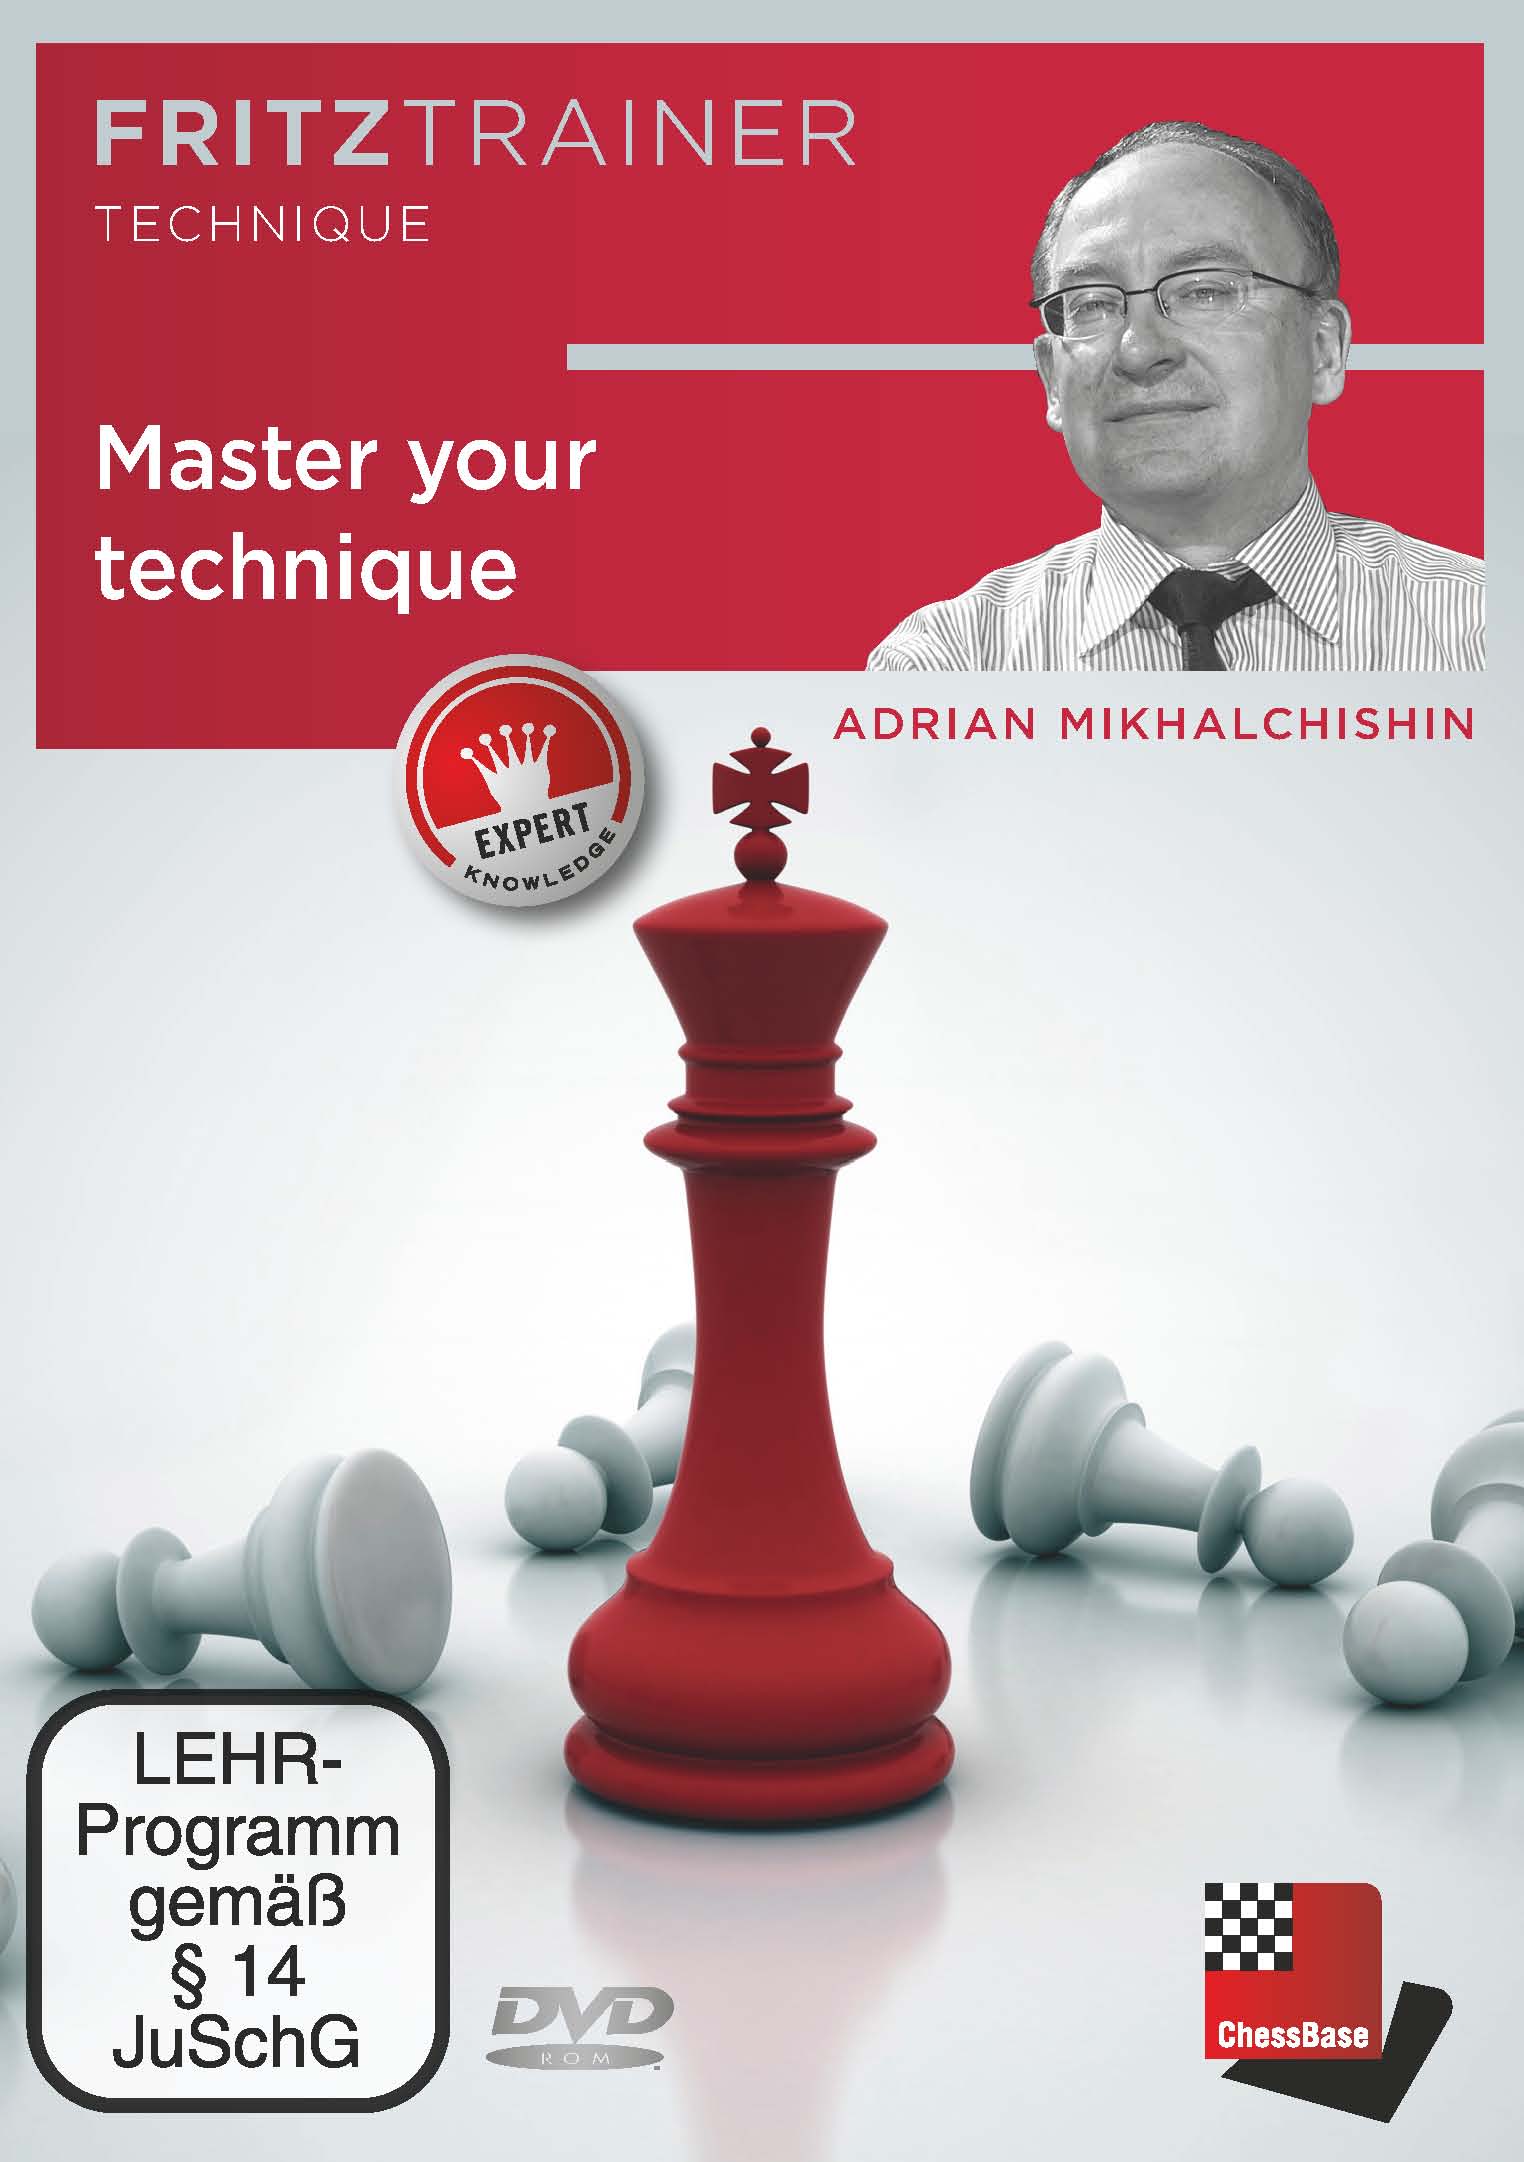 ChessBase 15: Replay Training (part 2)